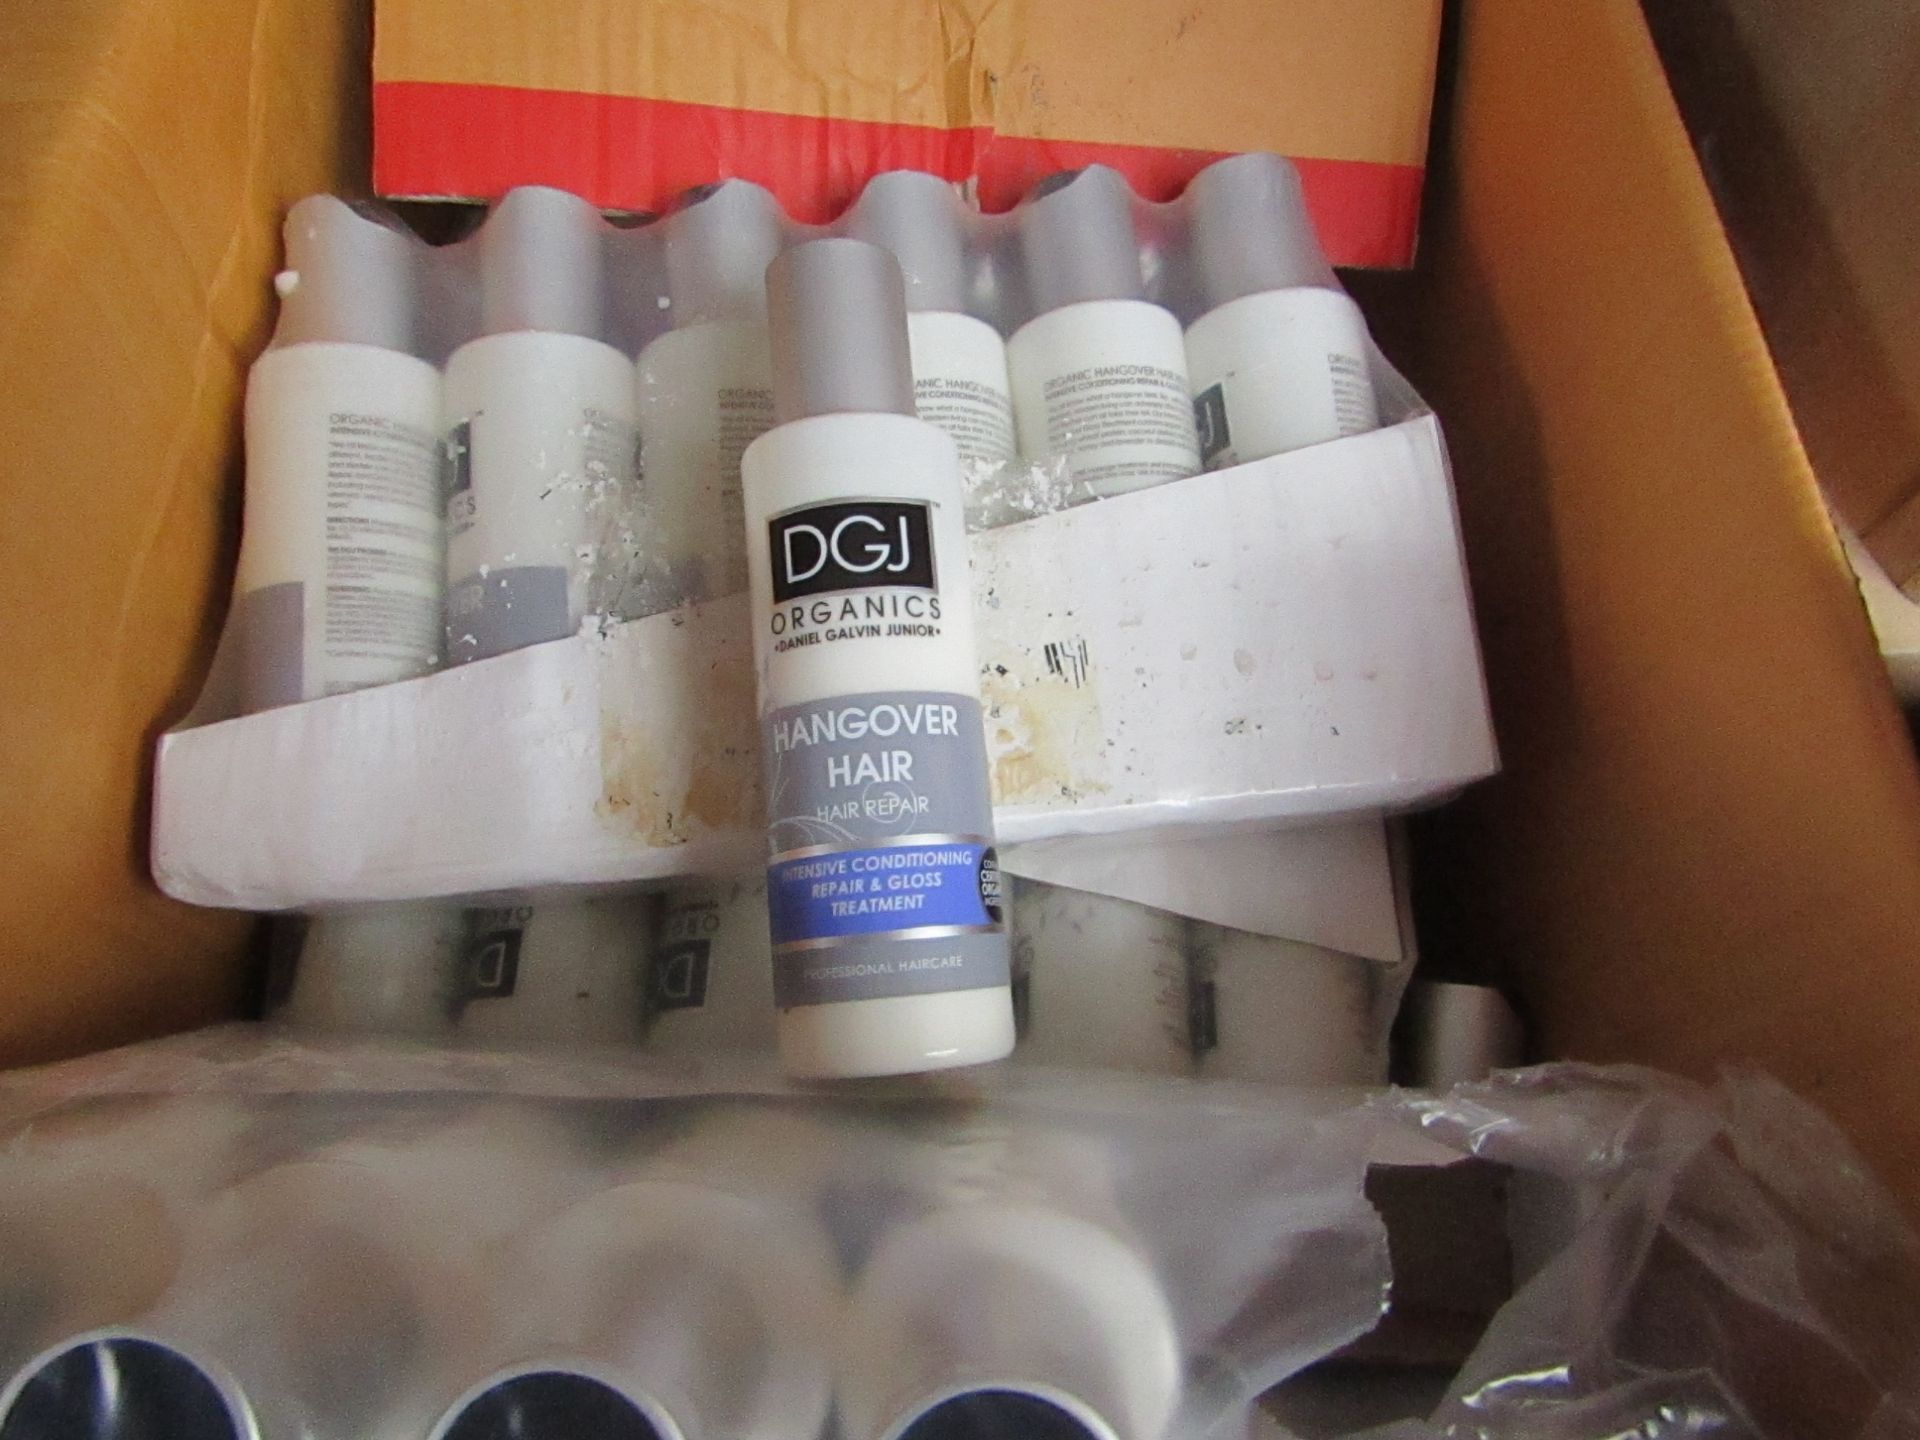 6 x 150ml DGJ Organics Hangover hair- hair repair.Packaged